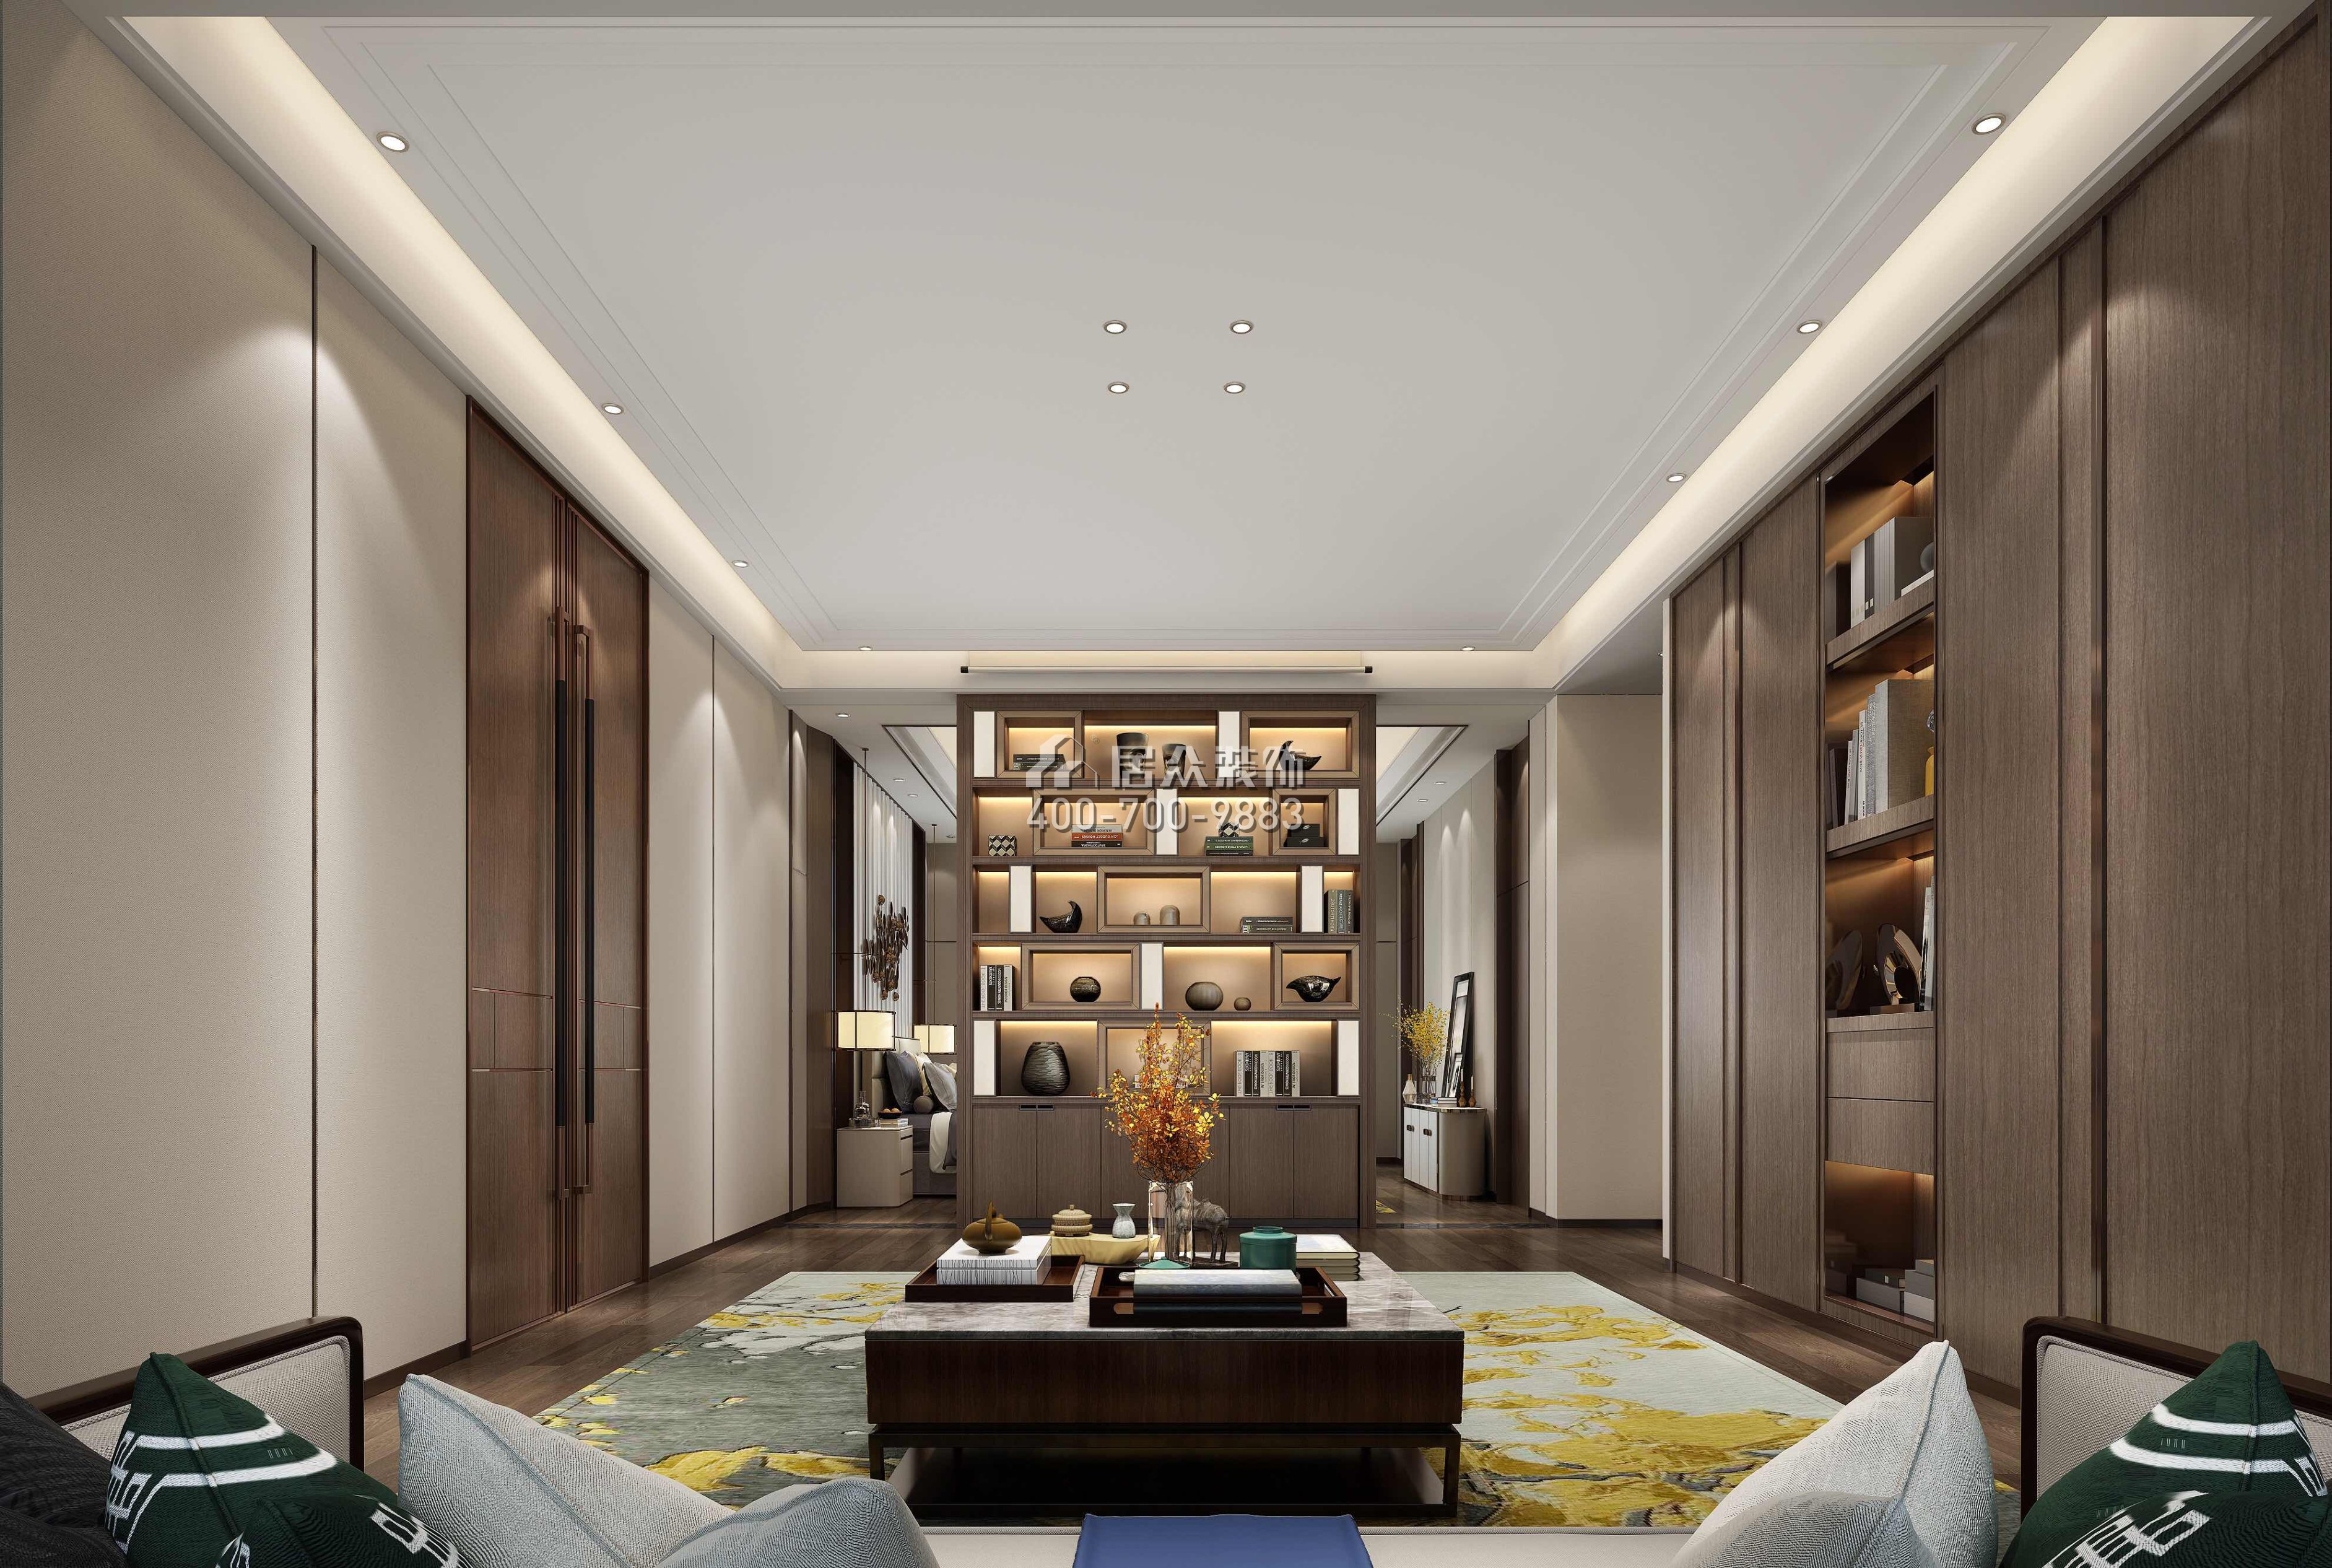 新世紀頤龍灣1000平方米中式風格別墅戶型書房裝修效果圖